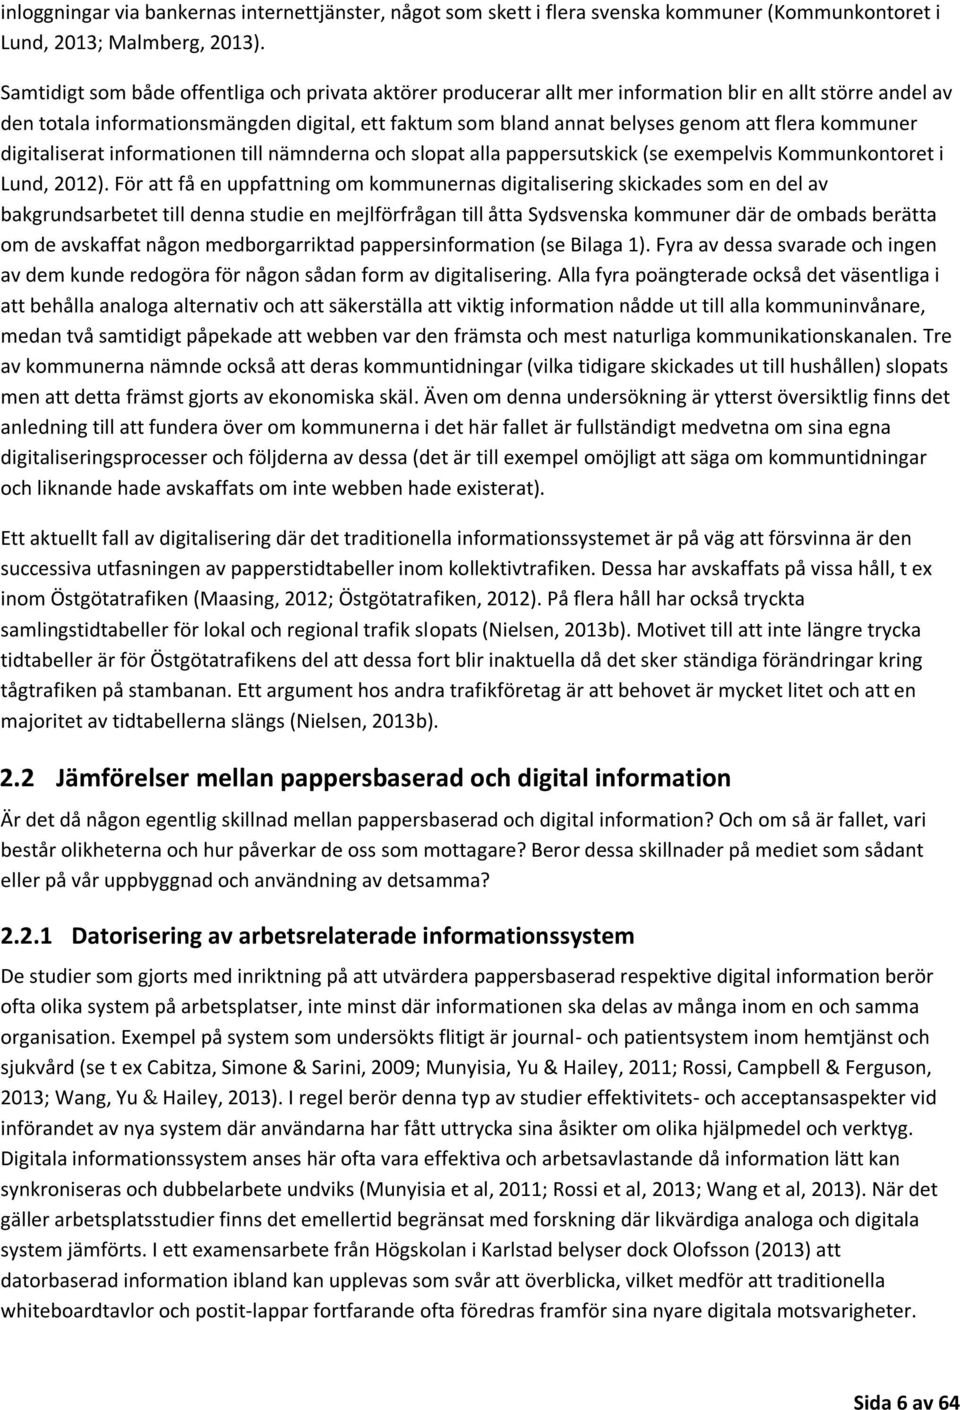 flera kommuner digitaliserat informationen till nämnderna och slopat alla pappersutskick (se exempelvis Kommunkontoret i Lund, 2012).